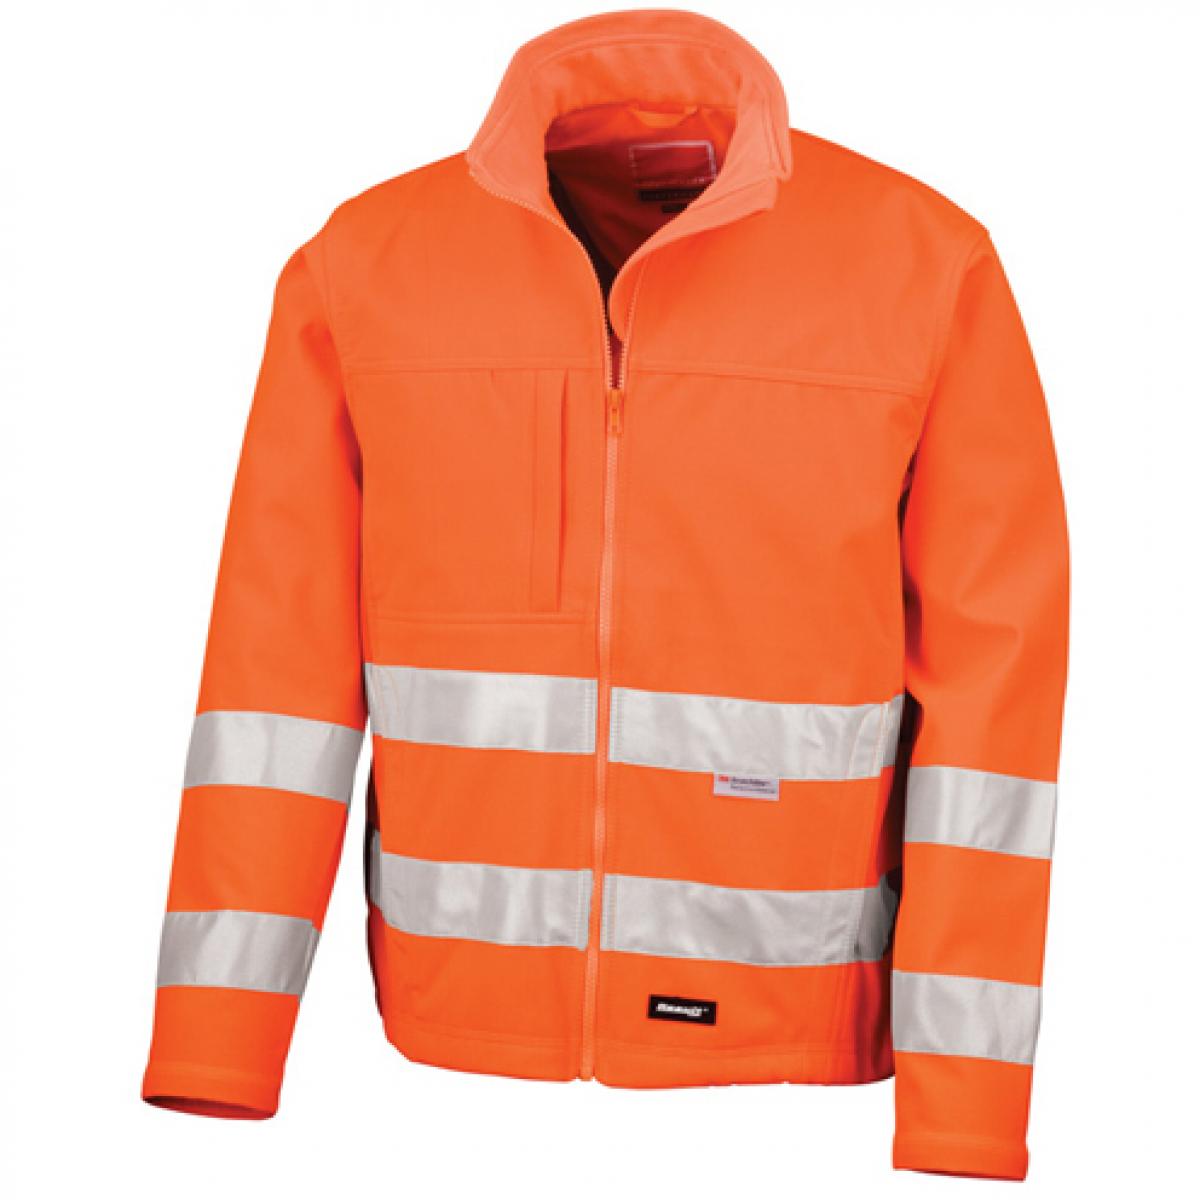 Hersteller: Result Herstellernummer: R117X Artikelbezeichnung: High-Vis Softshell Arbeits Jacke | ISO EN20471:2013 Klasse 2 Farbe: Fluorescent Orange